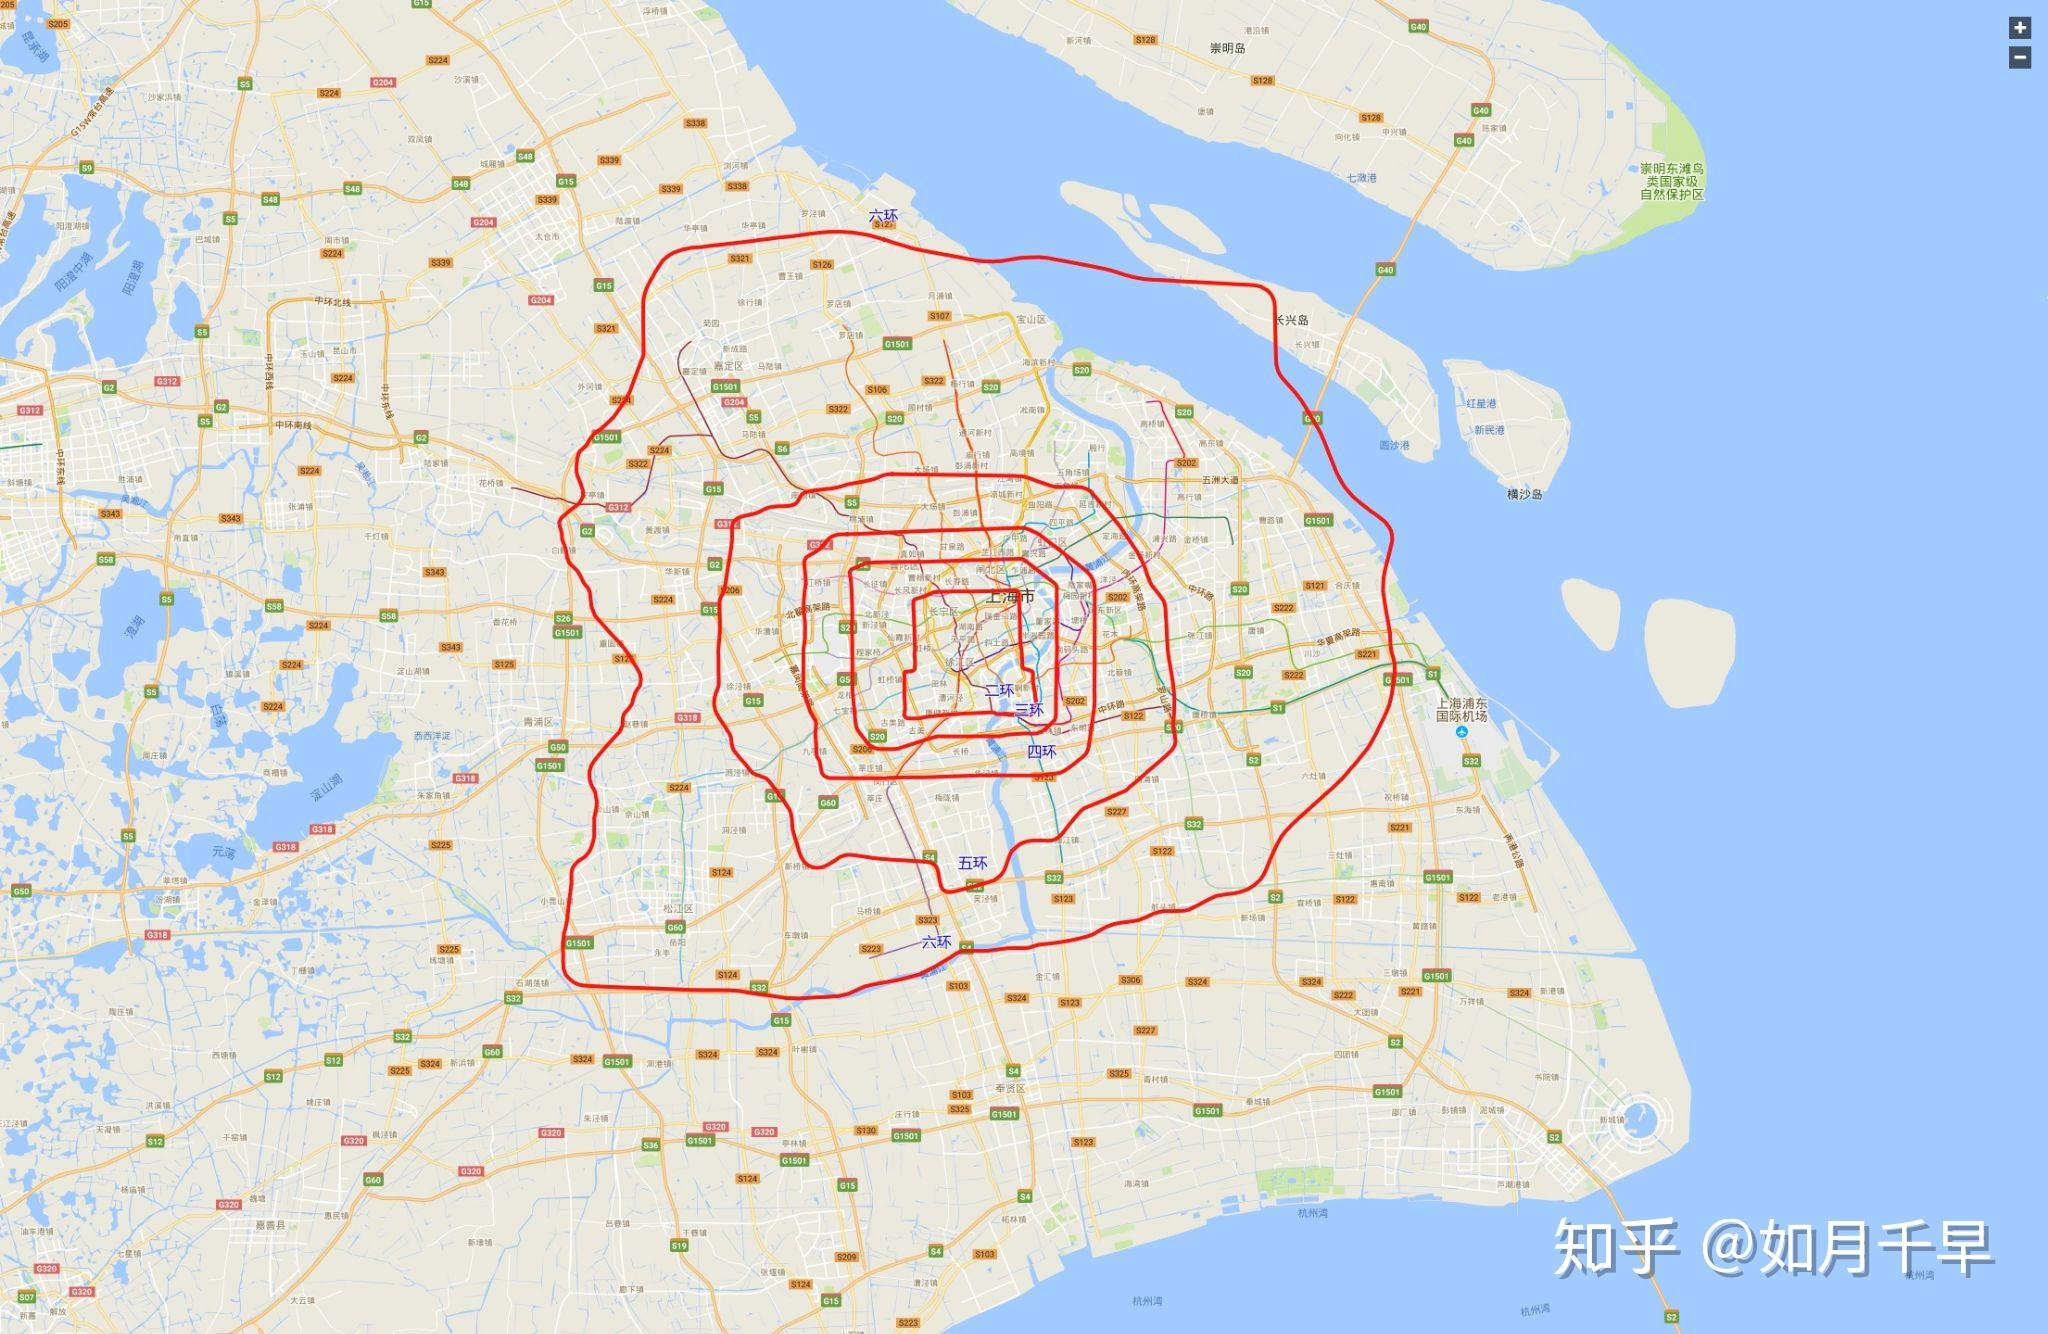 为什么这么多人迫切希望上海地铁再修一条大的外环线连接各个郊区?